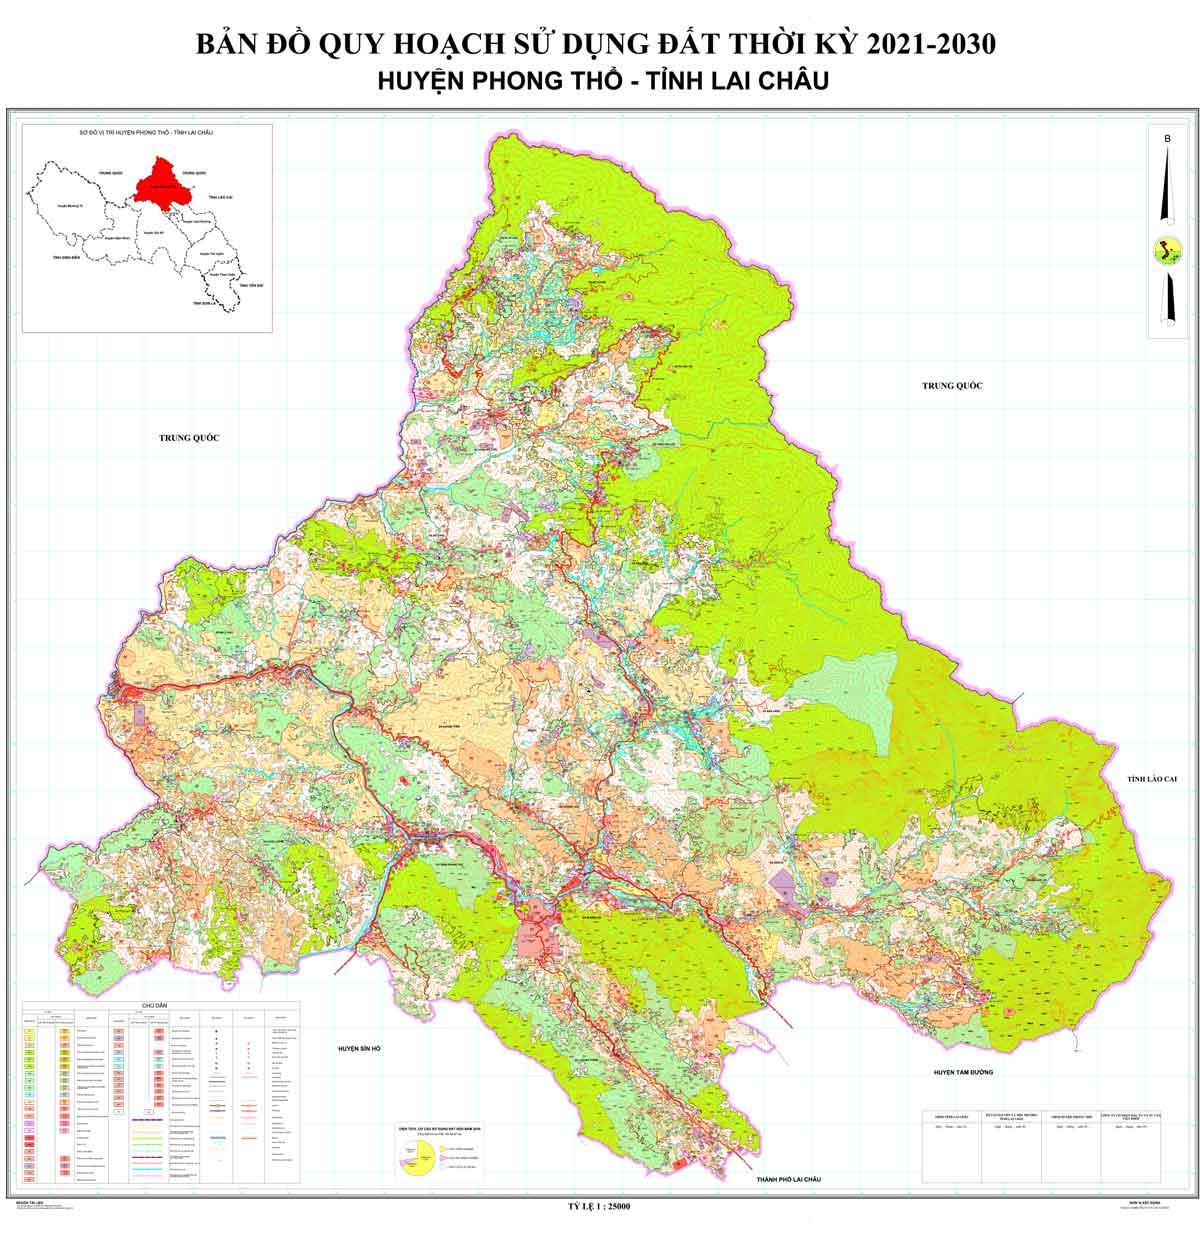 Bản đồ QHSDĐ huyện Phong Thổ đến năm 2030